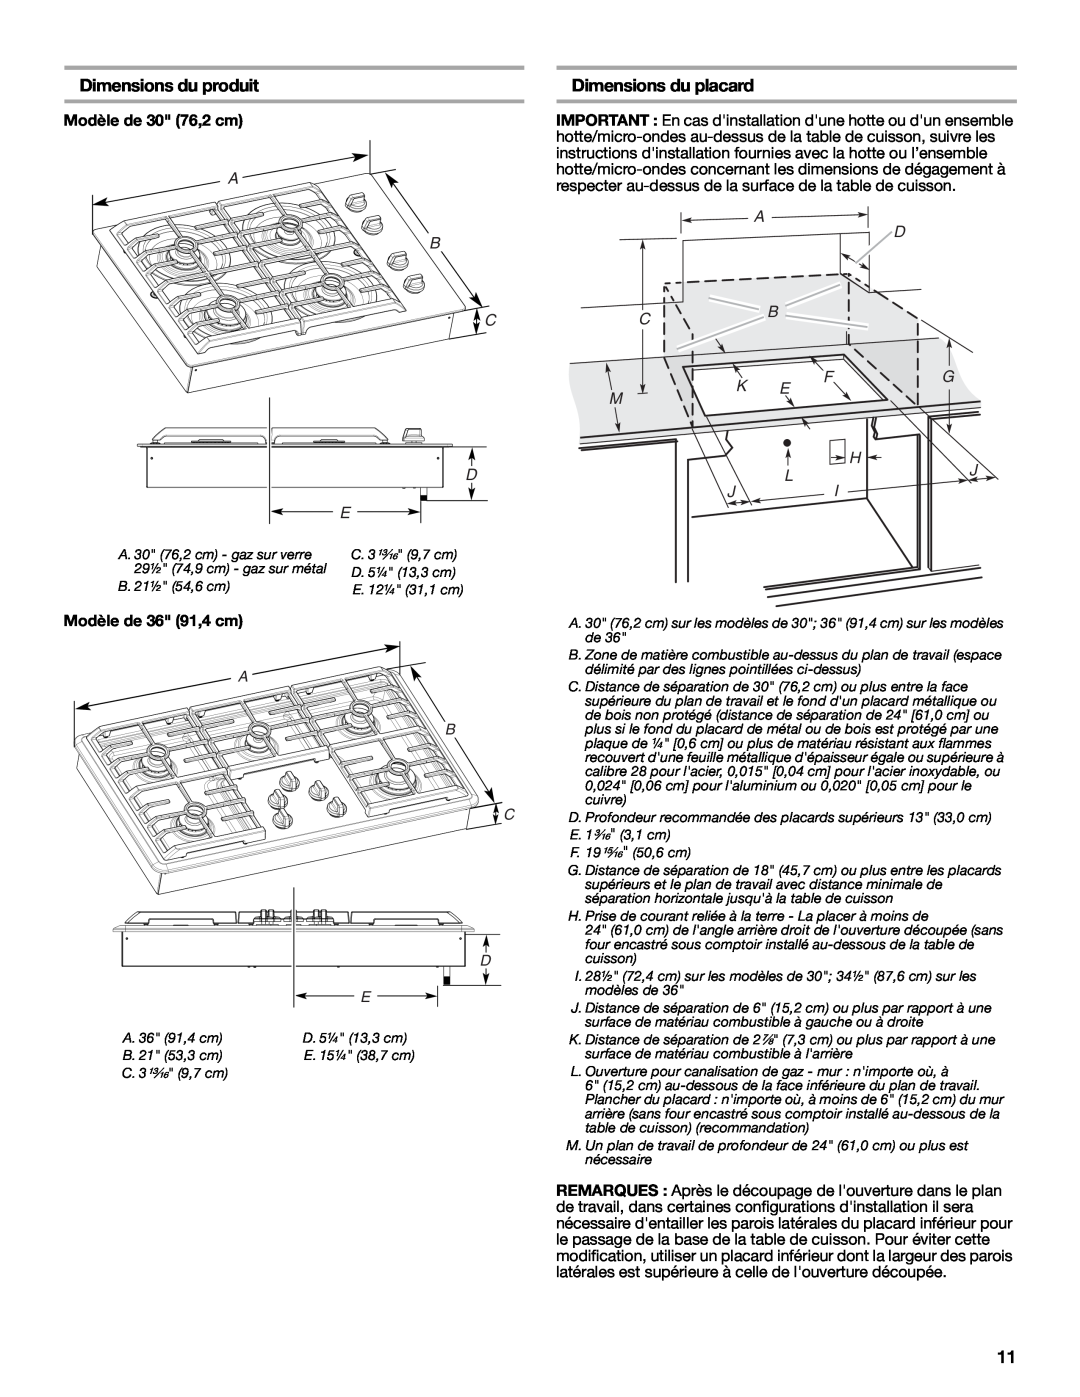 Maytag W10268392A Dimensions du produit, Dimensions du placard, Modèle de 30 76,2 cm, A D Cb, Fg H, Lj Ji, A B C D 